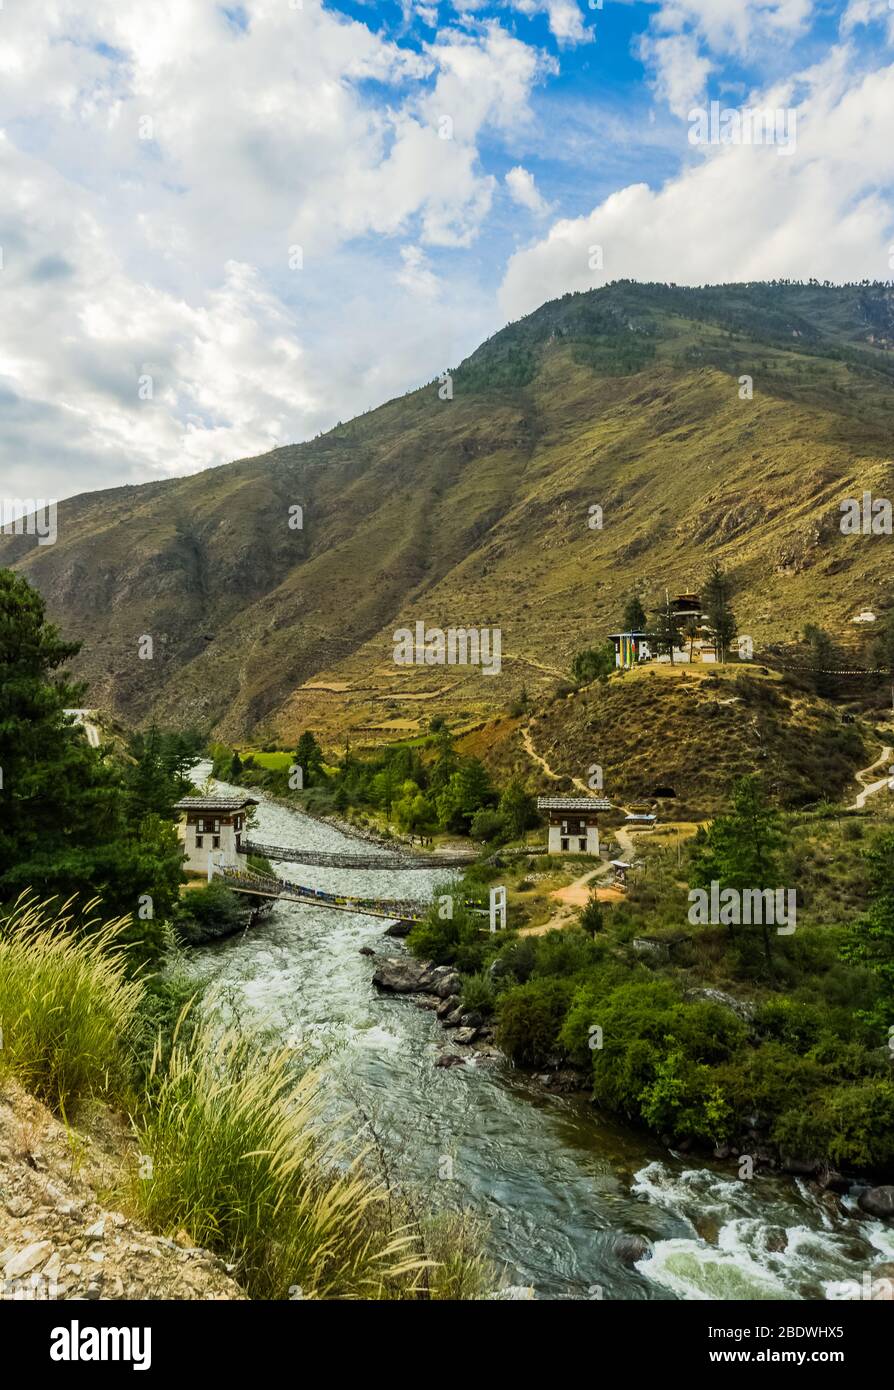 tachog lhakhang dzong avec un beau vieux pont près de la rivière Banque D'Images